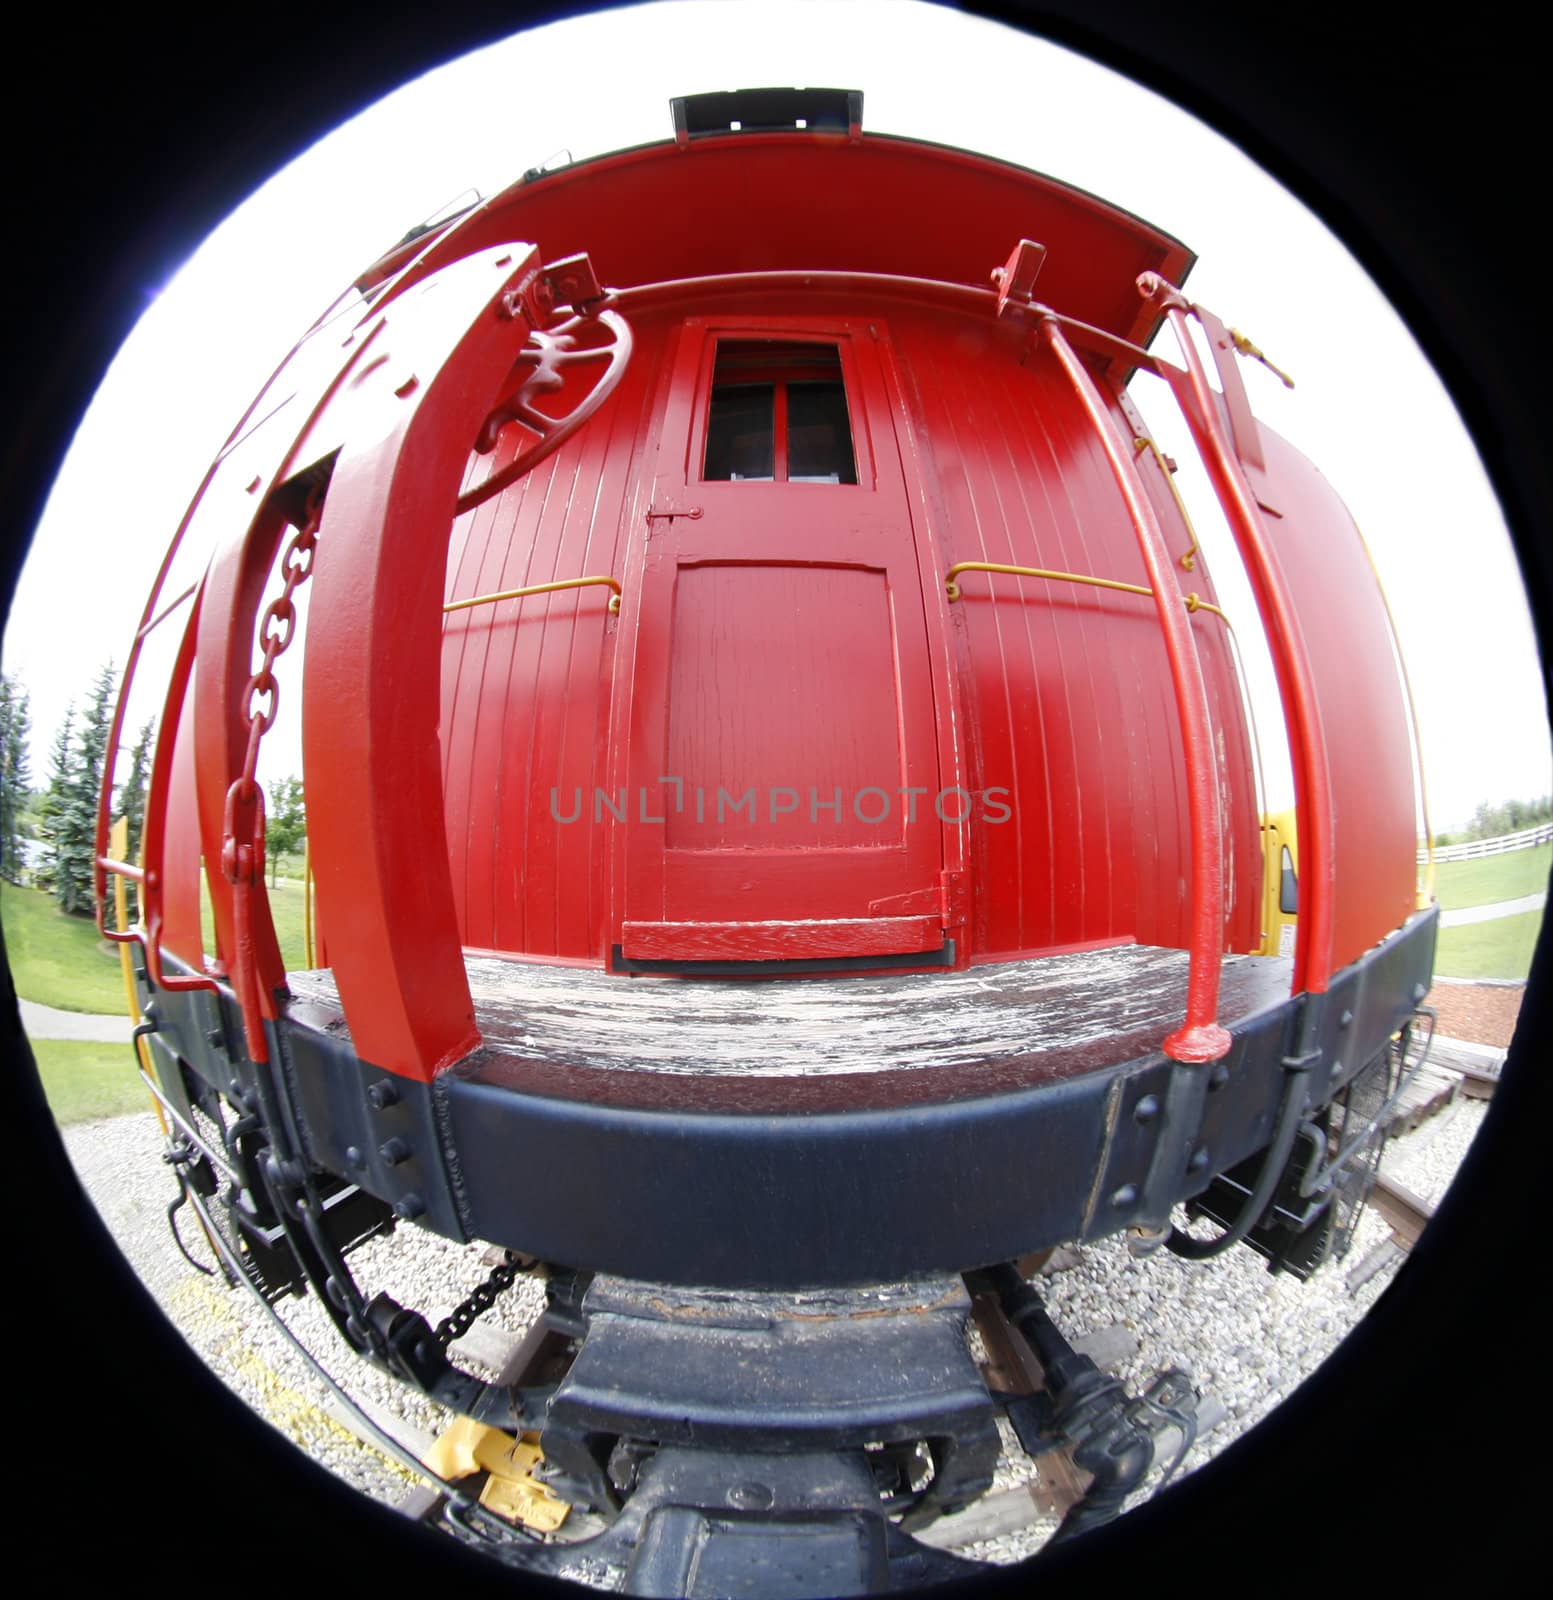 Red railway car through fish eye